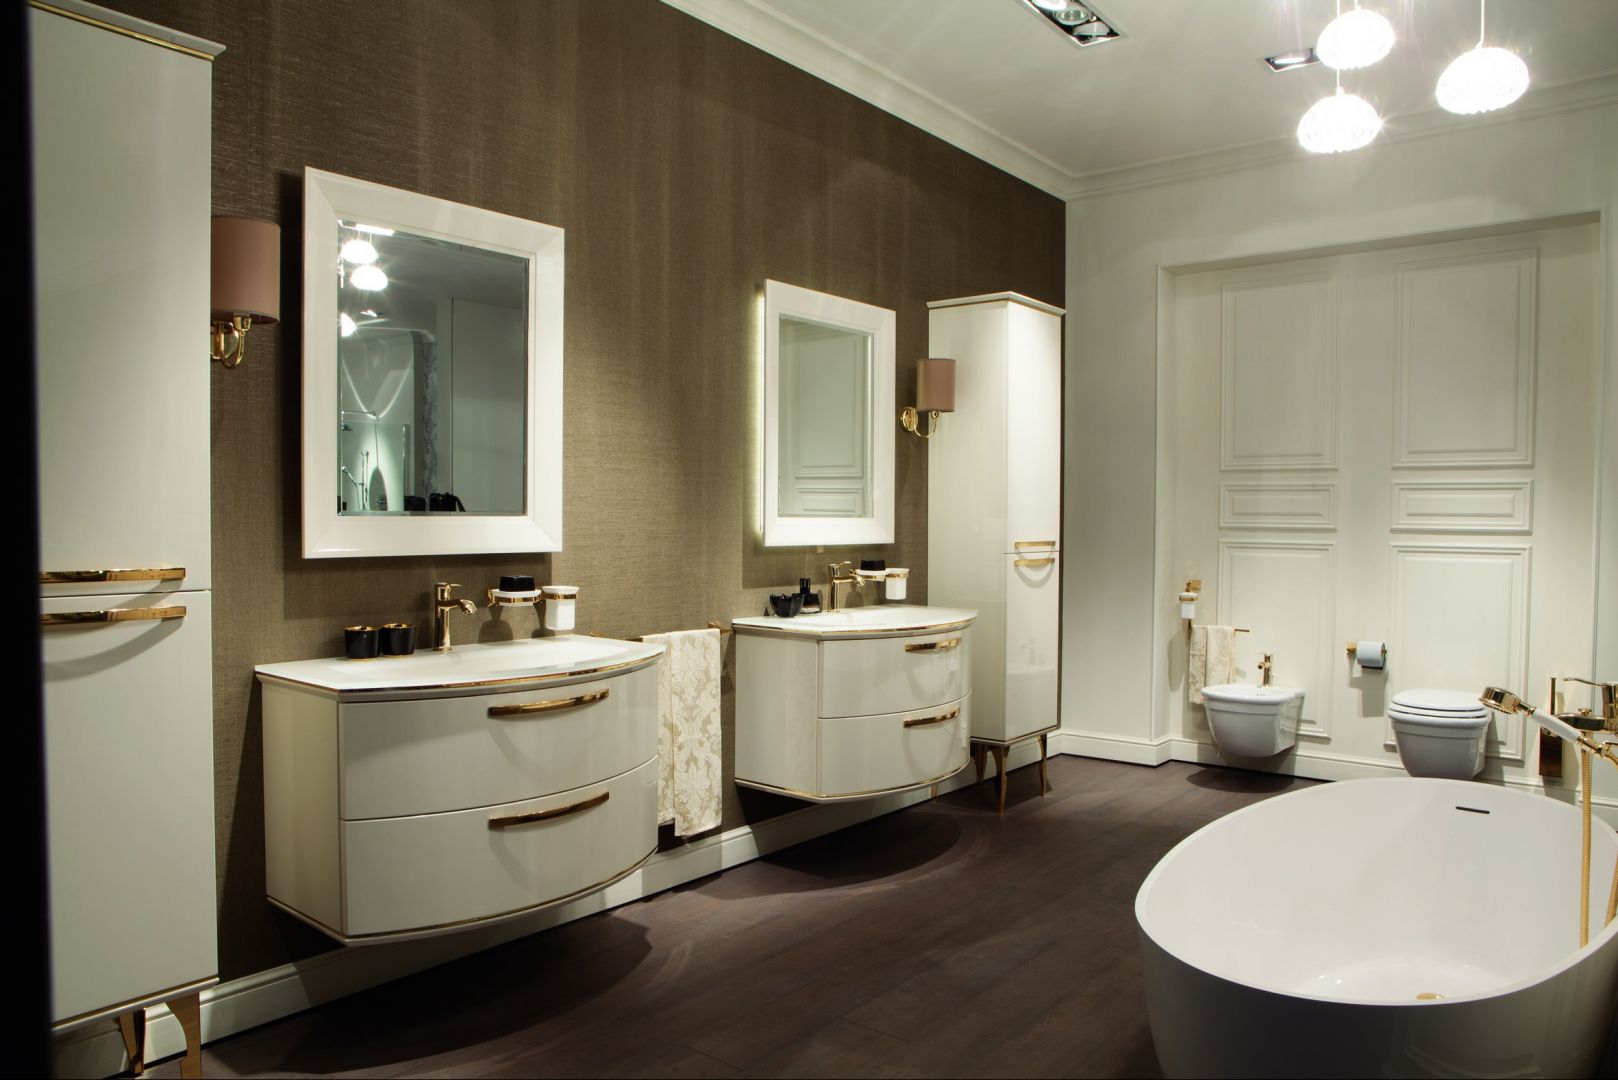 Meble Magnifica luksusowej marki Scavolini, to dobre rozwiązanie na wyposażenie łazienki w luksusowym apartamencie
Fot. Scavolini